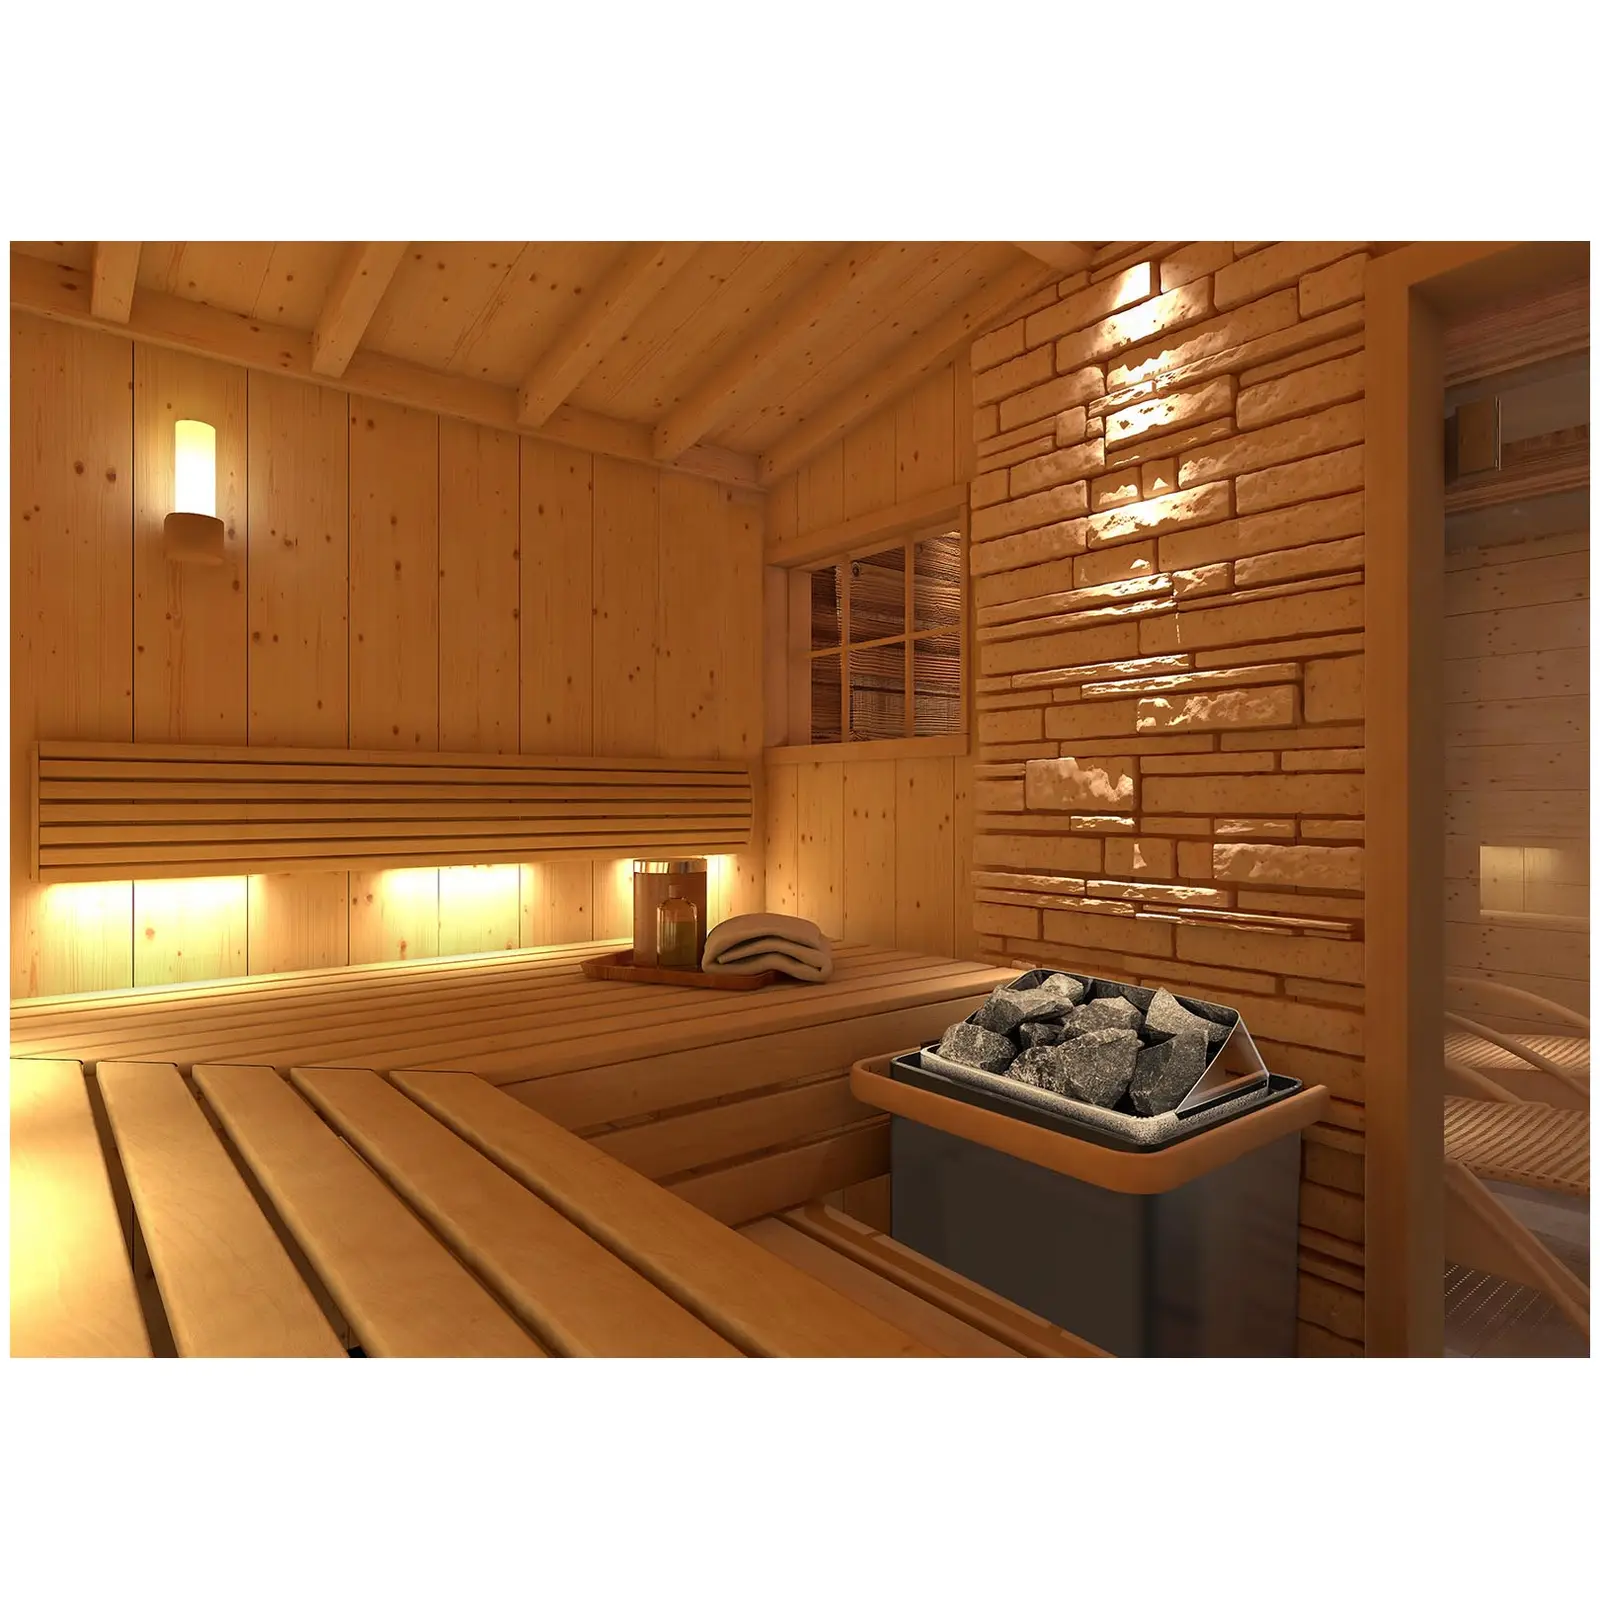 Saunová kamna s řídicí jednotkou pro sauny - 6 kW - 30 až 110 °C - LED displej